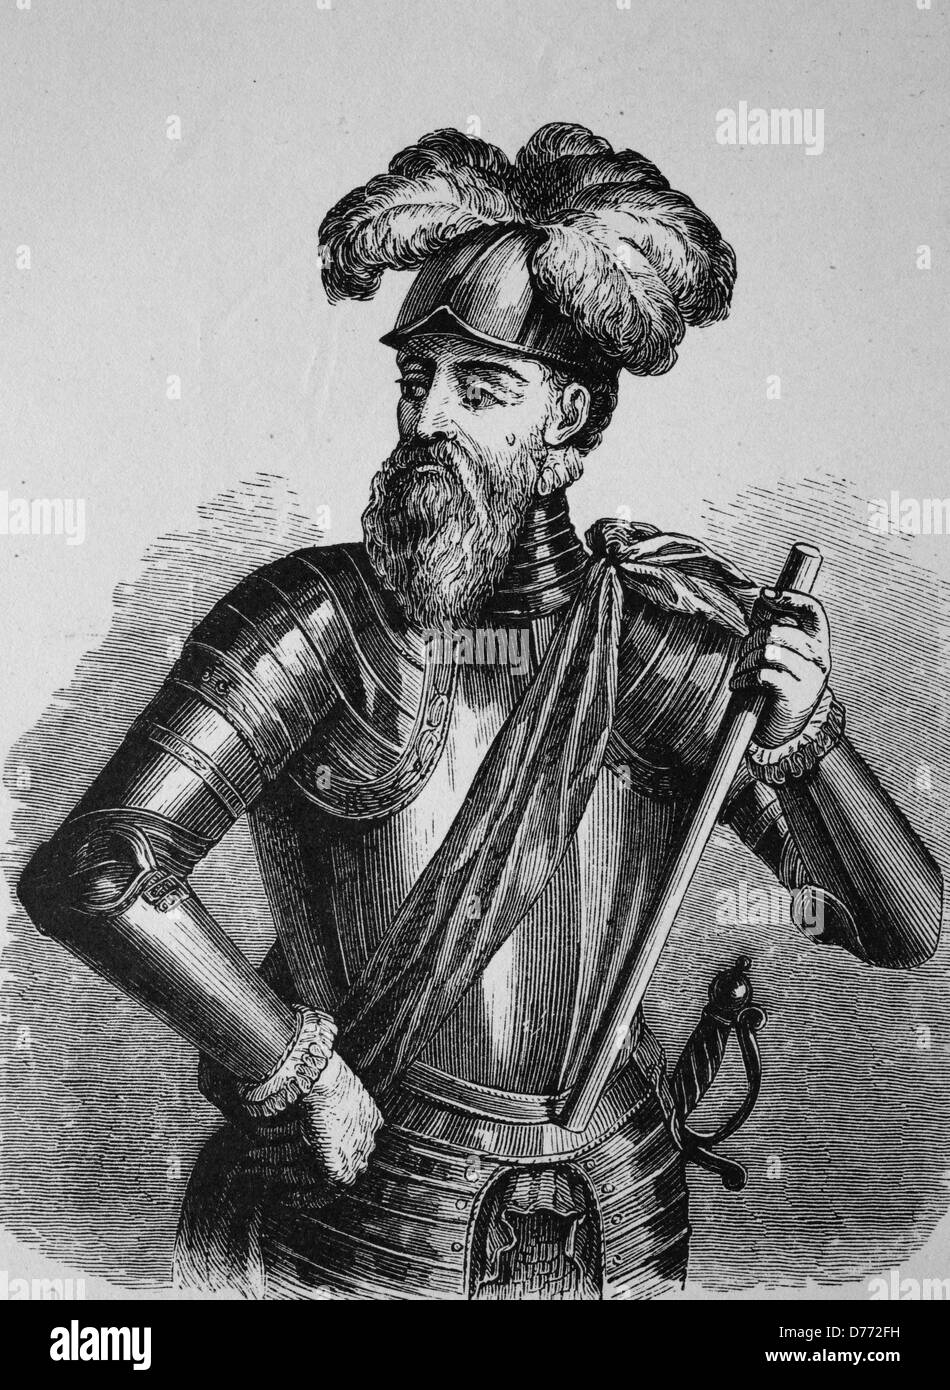 Francisco Pizarro González, 1476 - 1541, il conquistador spagnolo che conquistarono il regno degli Incas, xilografia dal 1880 Foto Stock